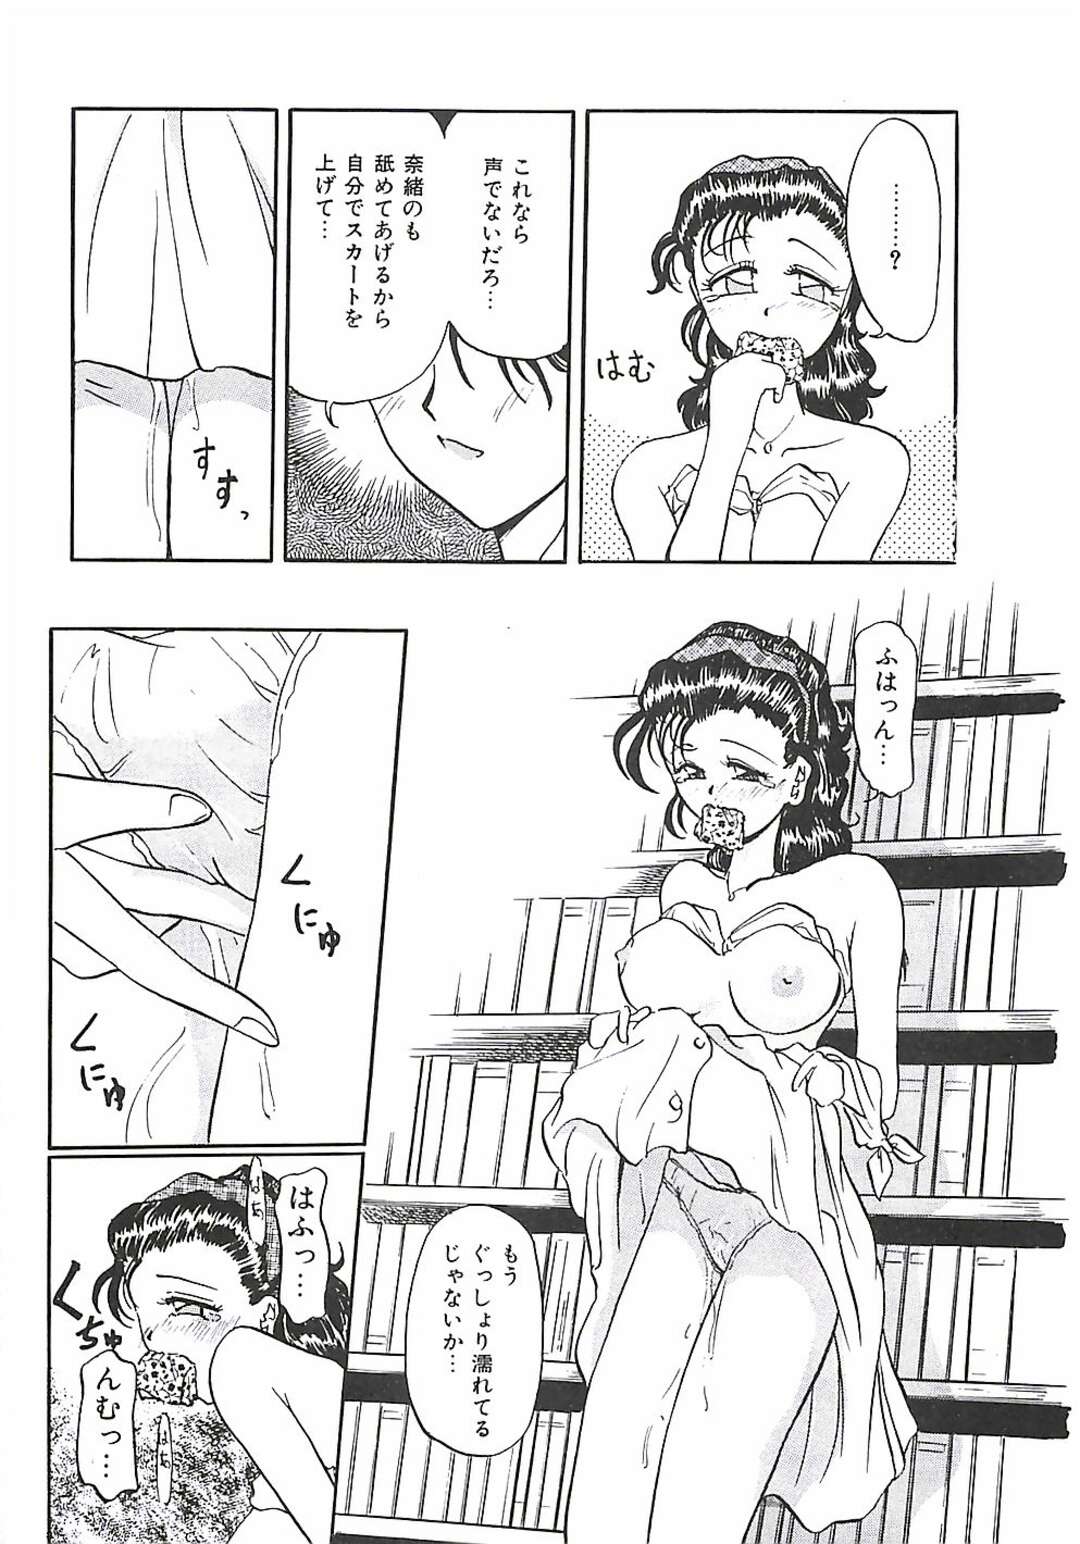 【エロ漫画】図書館で彼氏に身体を求められ、キスや愛撫される巨乳美少女。フェラでご奉仕してクンニに感じまくり、イチャラブ露出セックスでマゾアクメ